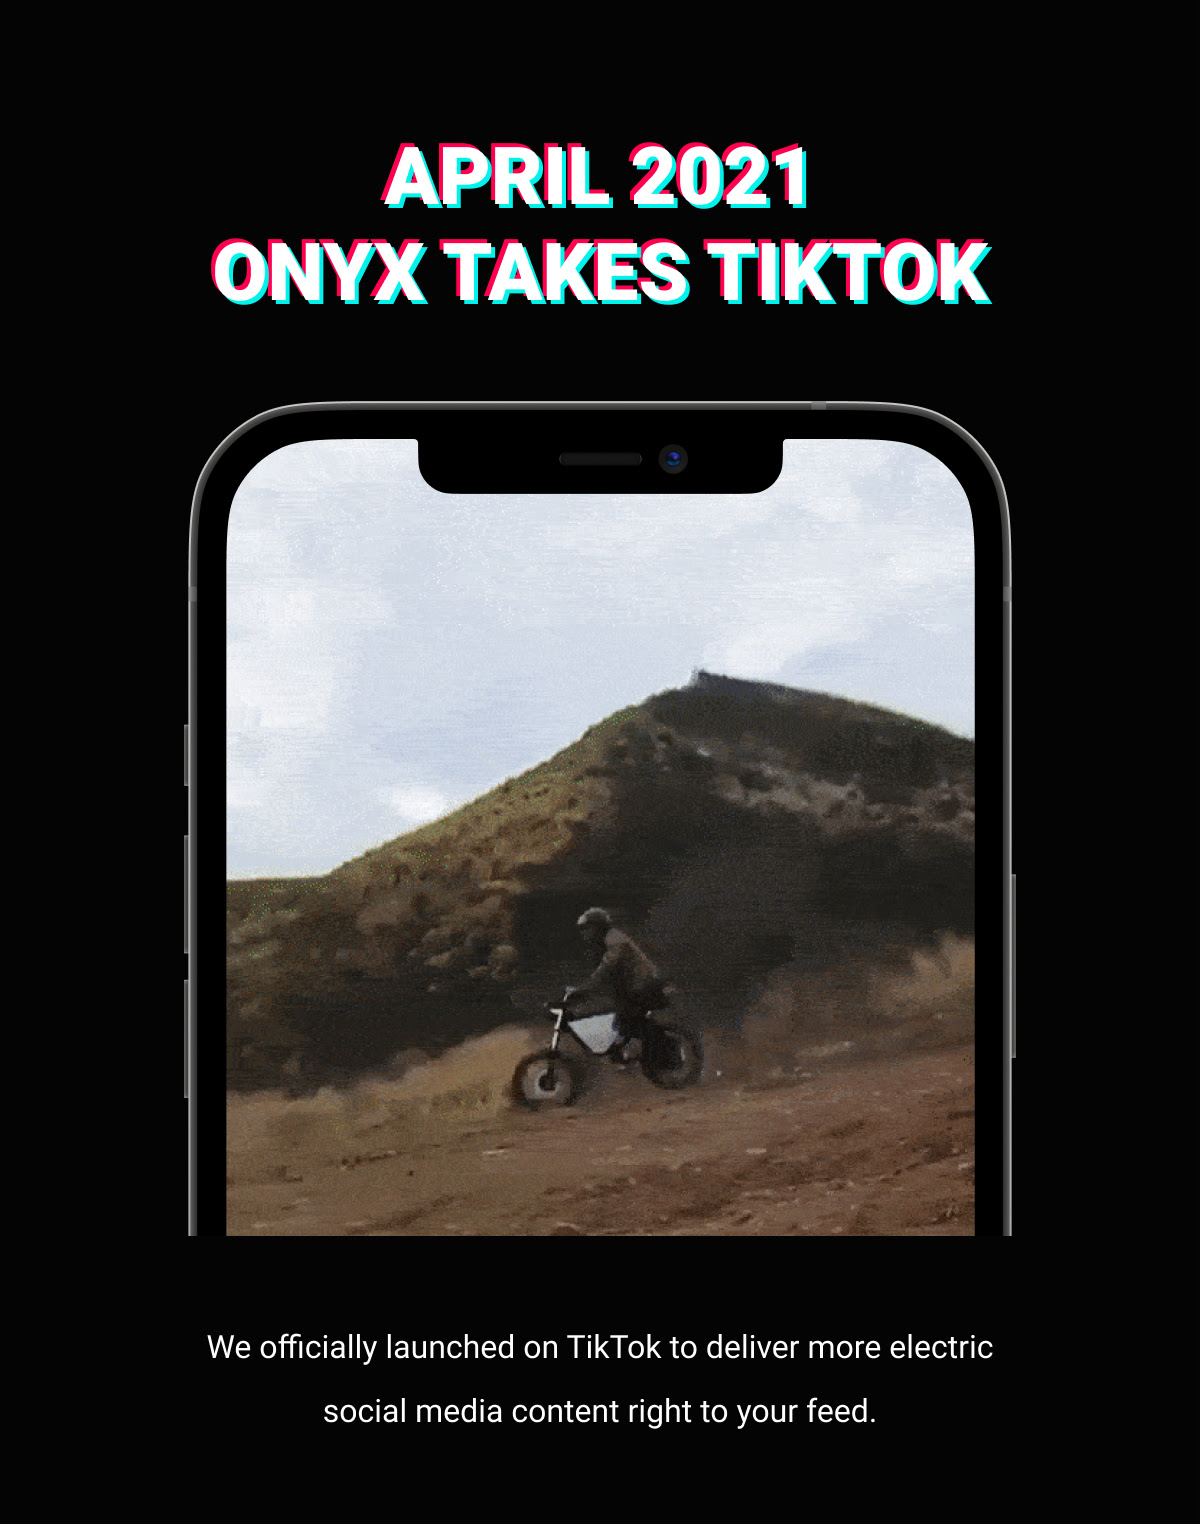 April 2021: ONYX Takes TikTok